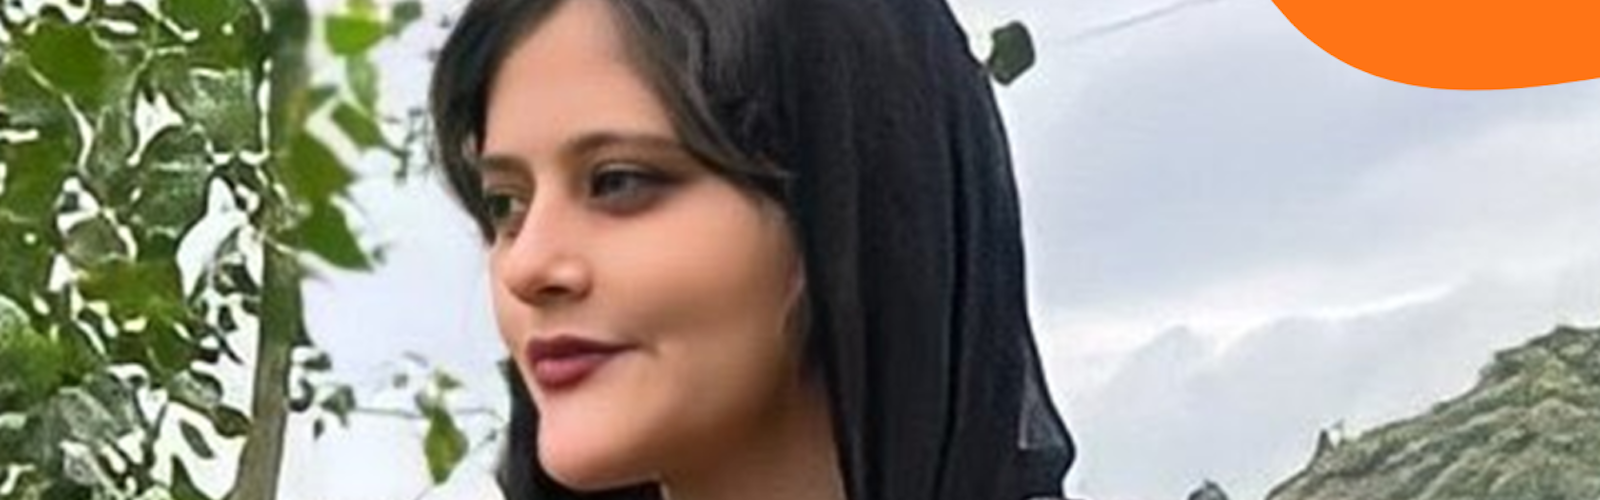 Solidarietà alle donne iraniane da Runipace